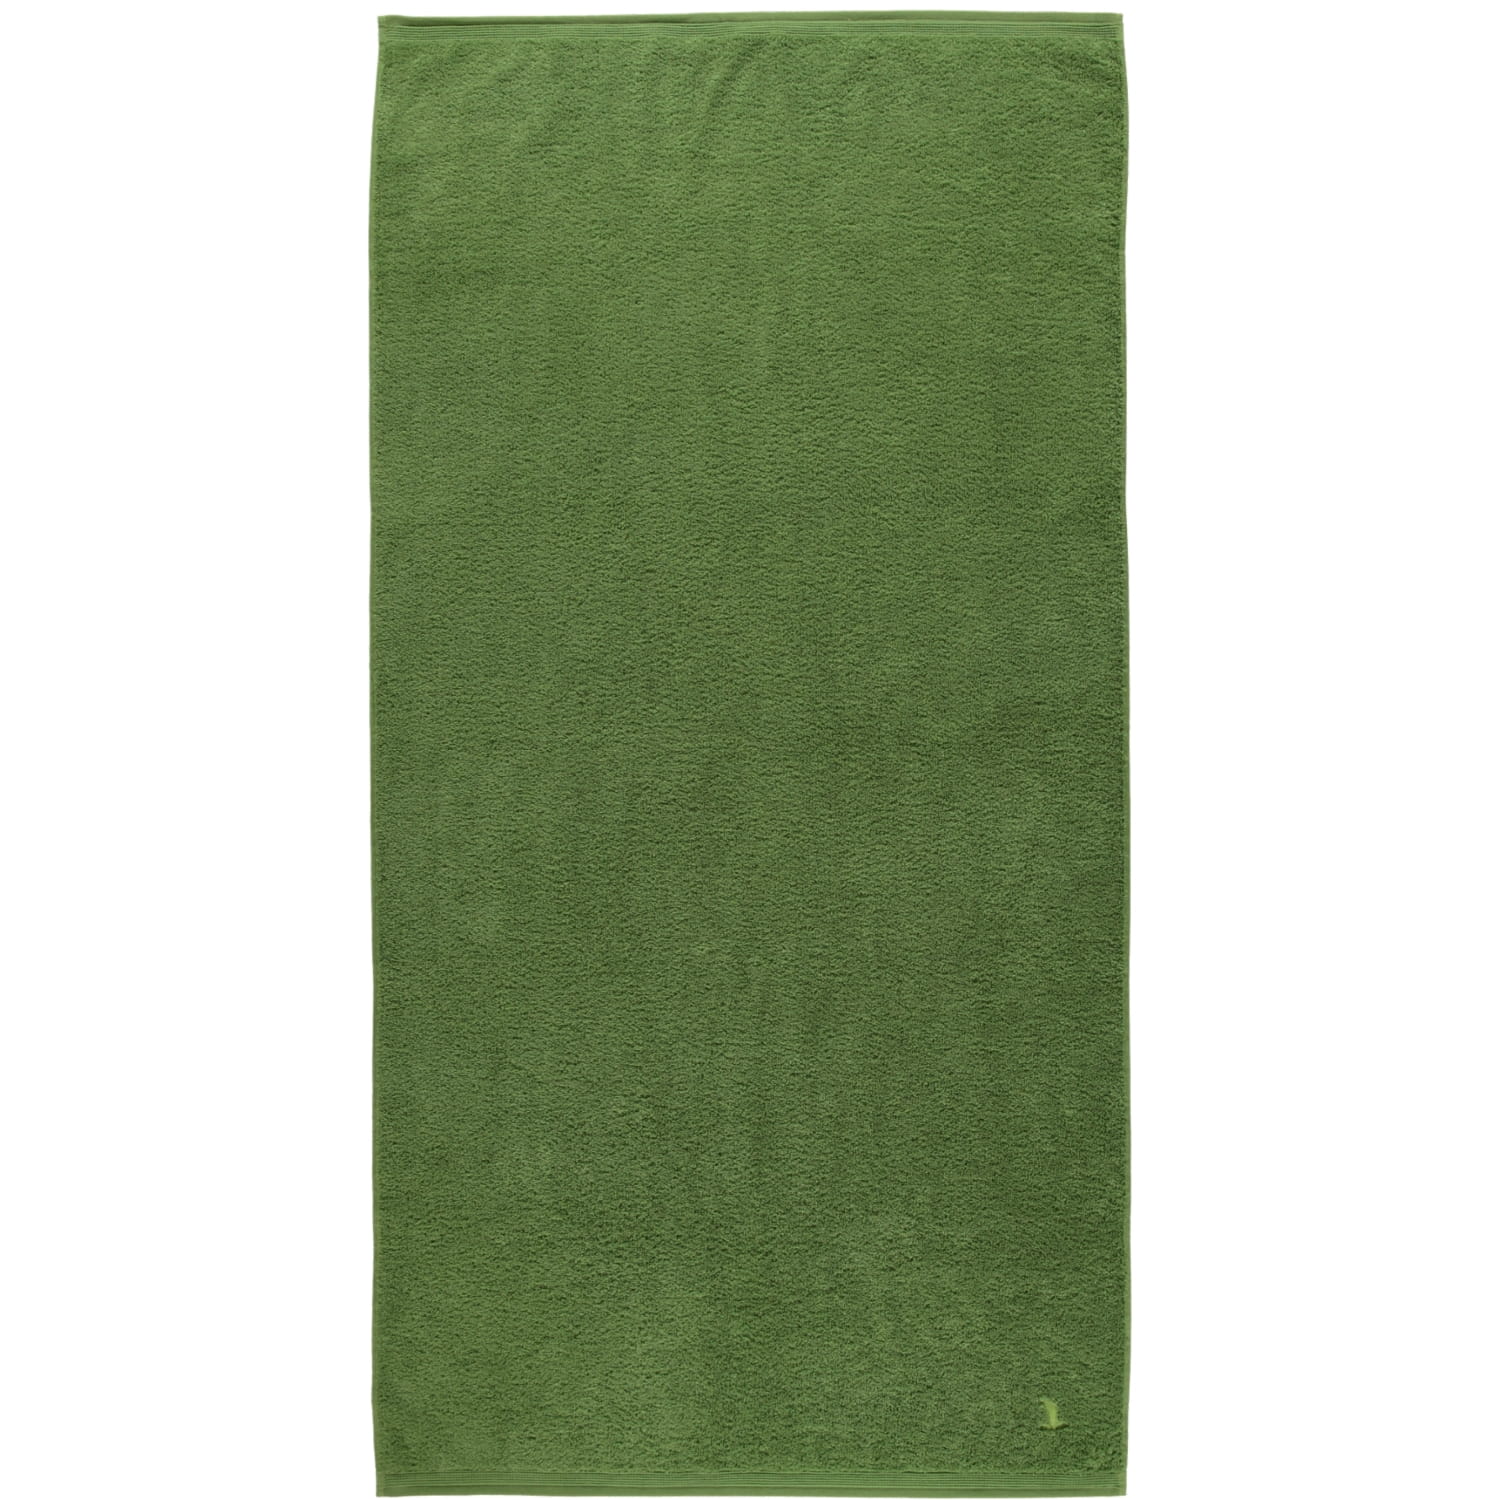 Möve Elements Handtuch in verschiedenen Größen grün - apple 607